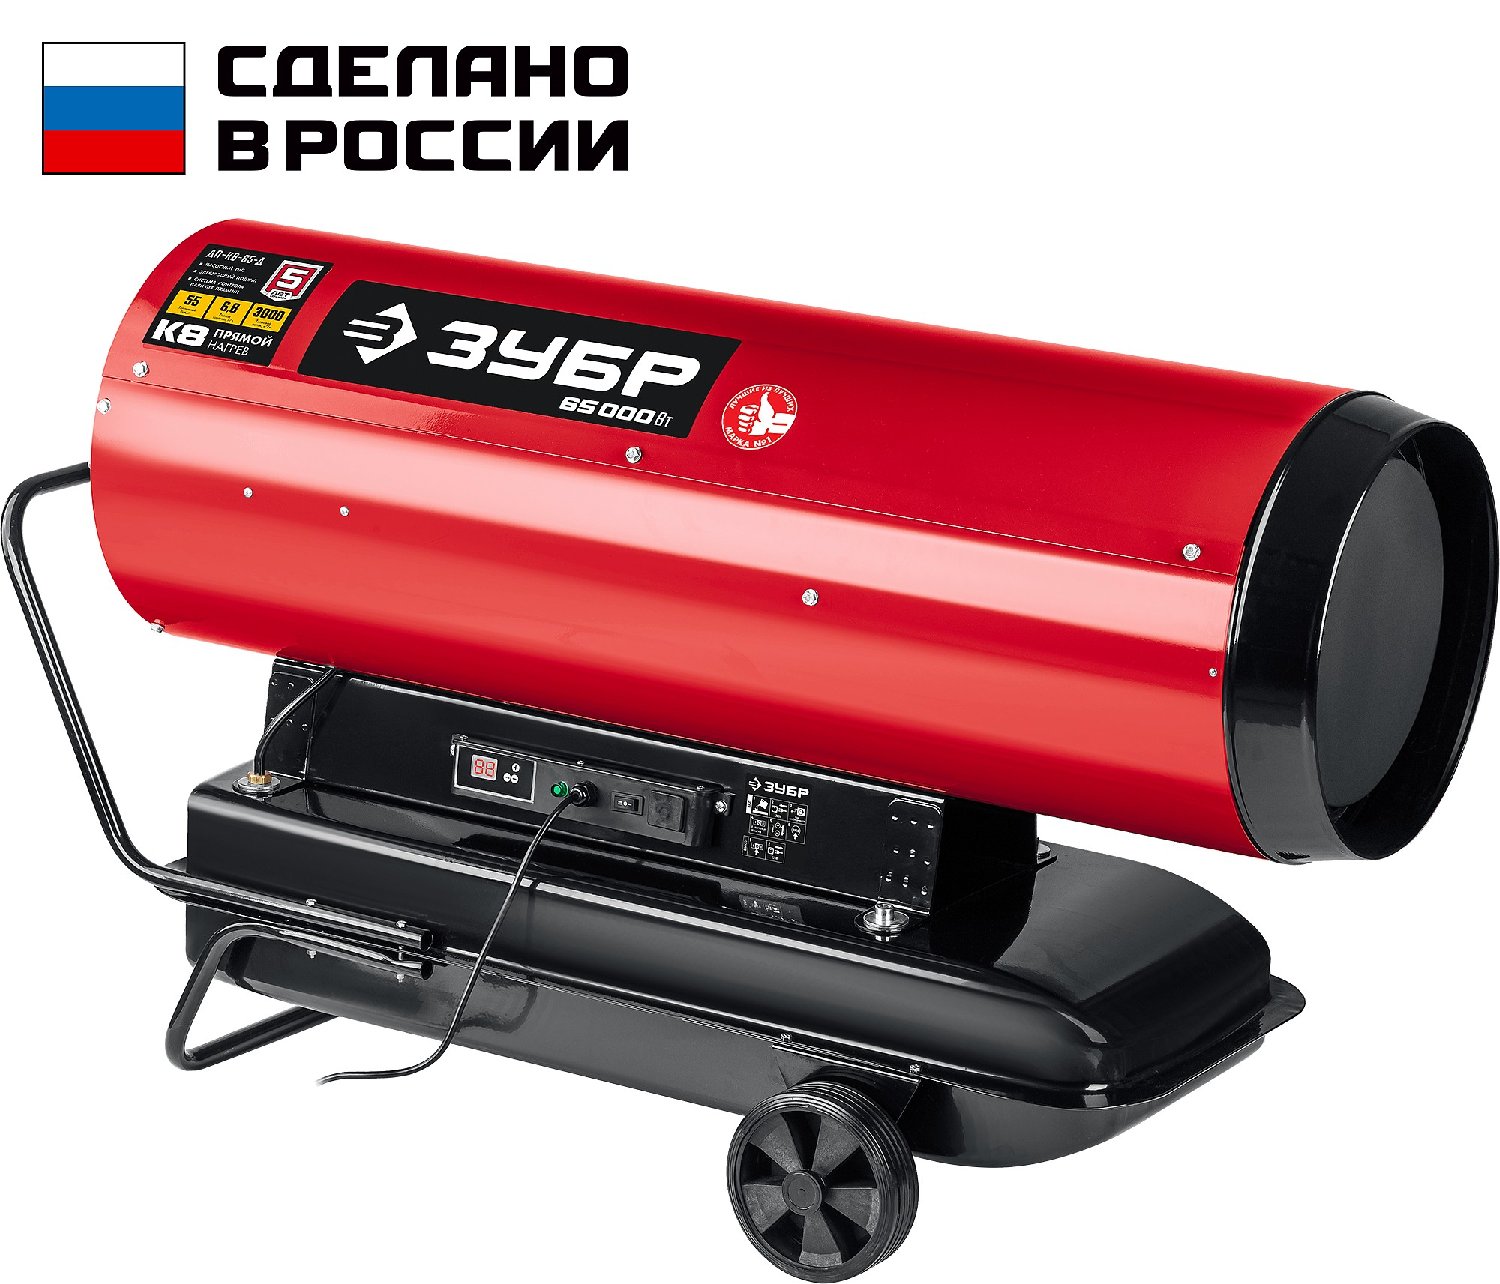 ЗУБР 65 кВт, дизельная тепловая пушка, прямой нагрев () (ДП-К8-65-Д)